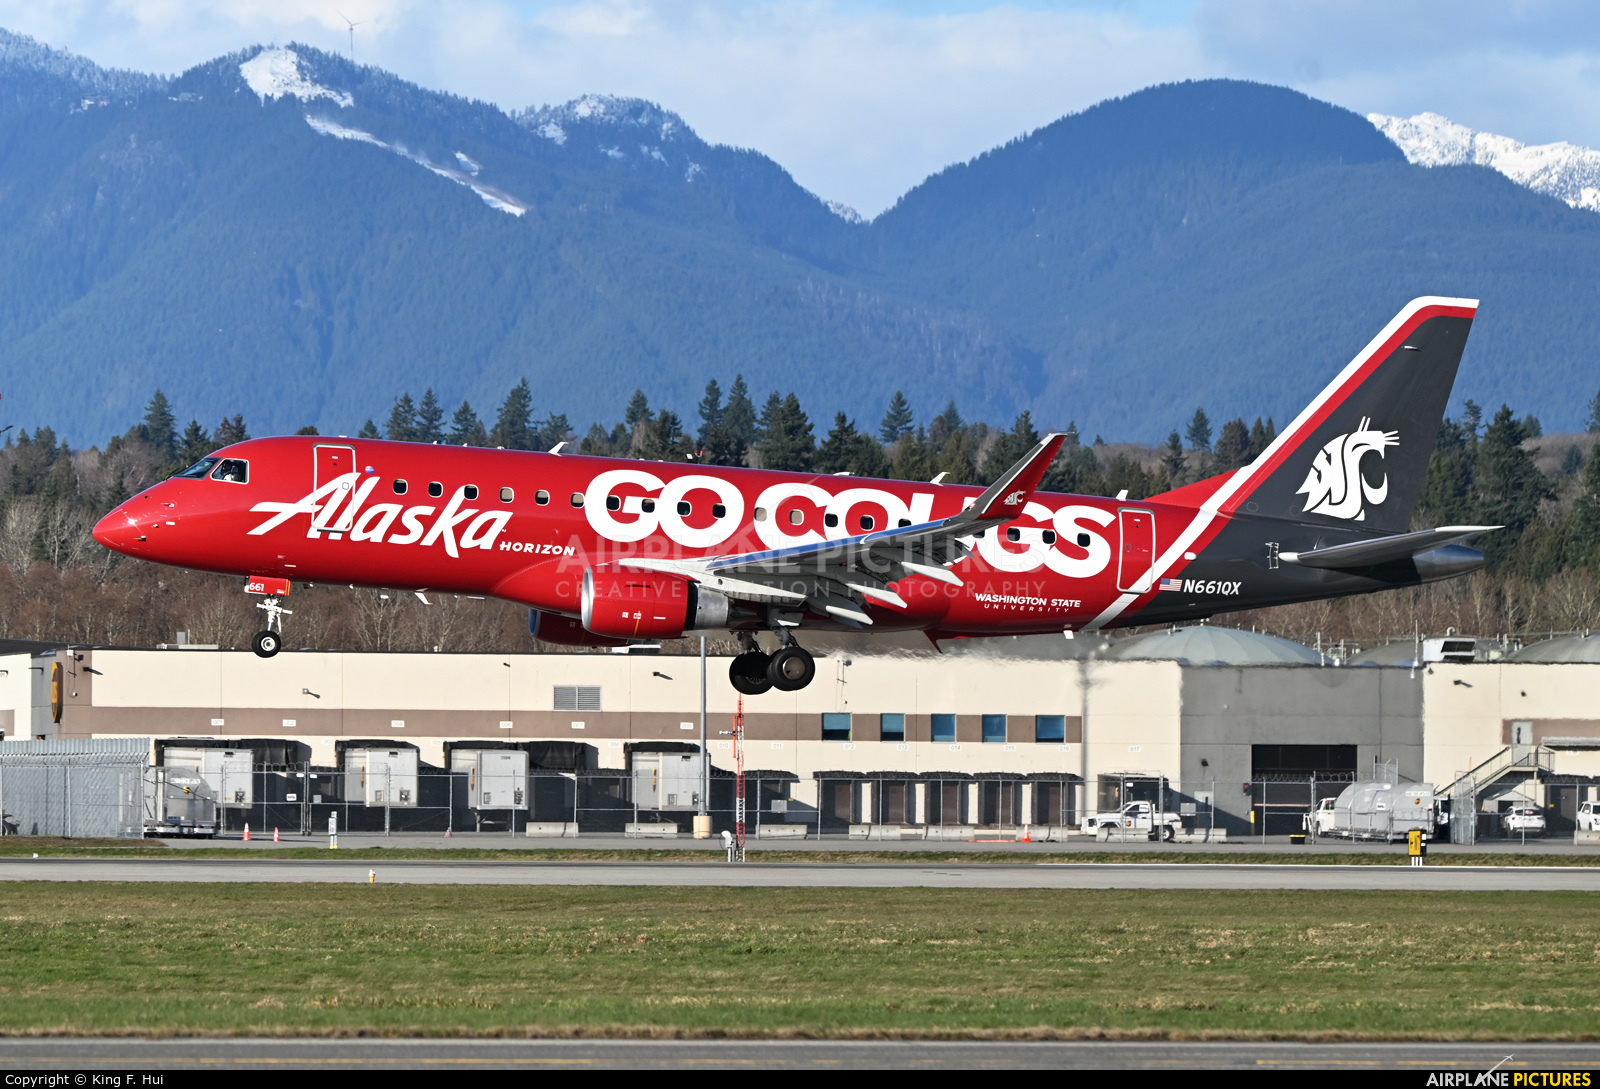 Alaska Airlines - Horizon Air N661QX aircraft at Vancouver Intl, BC